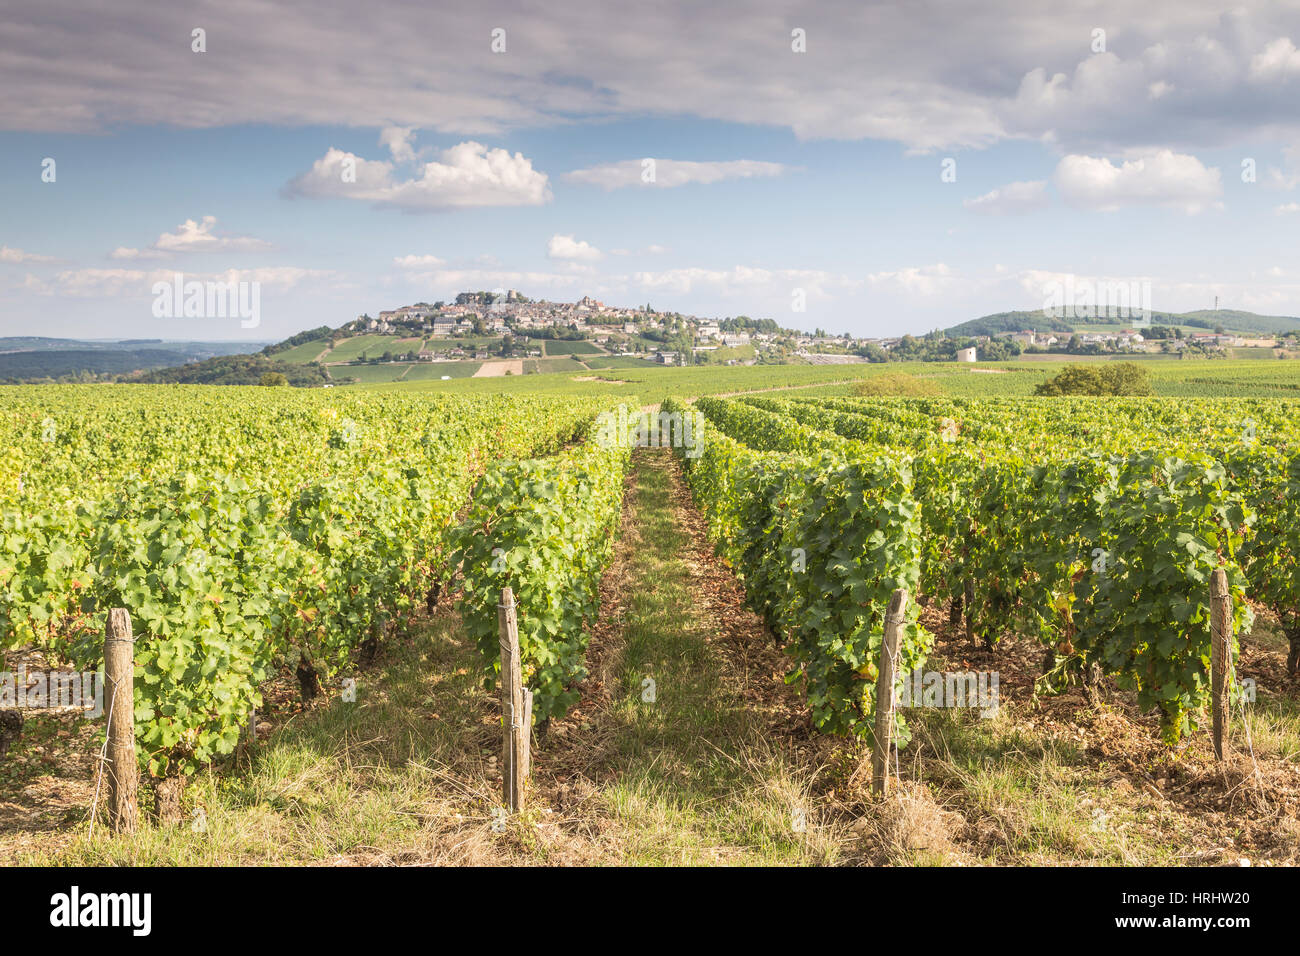 Los viñedos de Sancerre, Francia. Conocida por sus excelentes vinos de uvas de las variedades como Pinot Noir y Sauvignon blanc, la vid Foto de stock